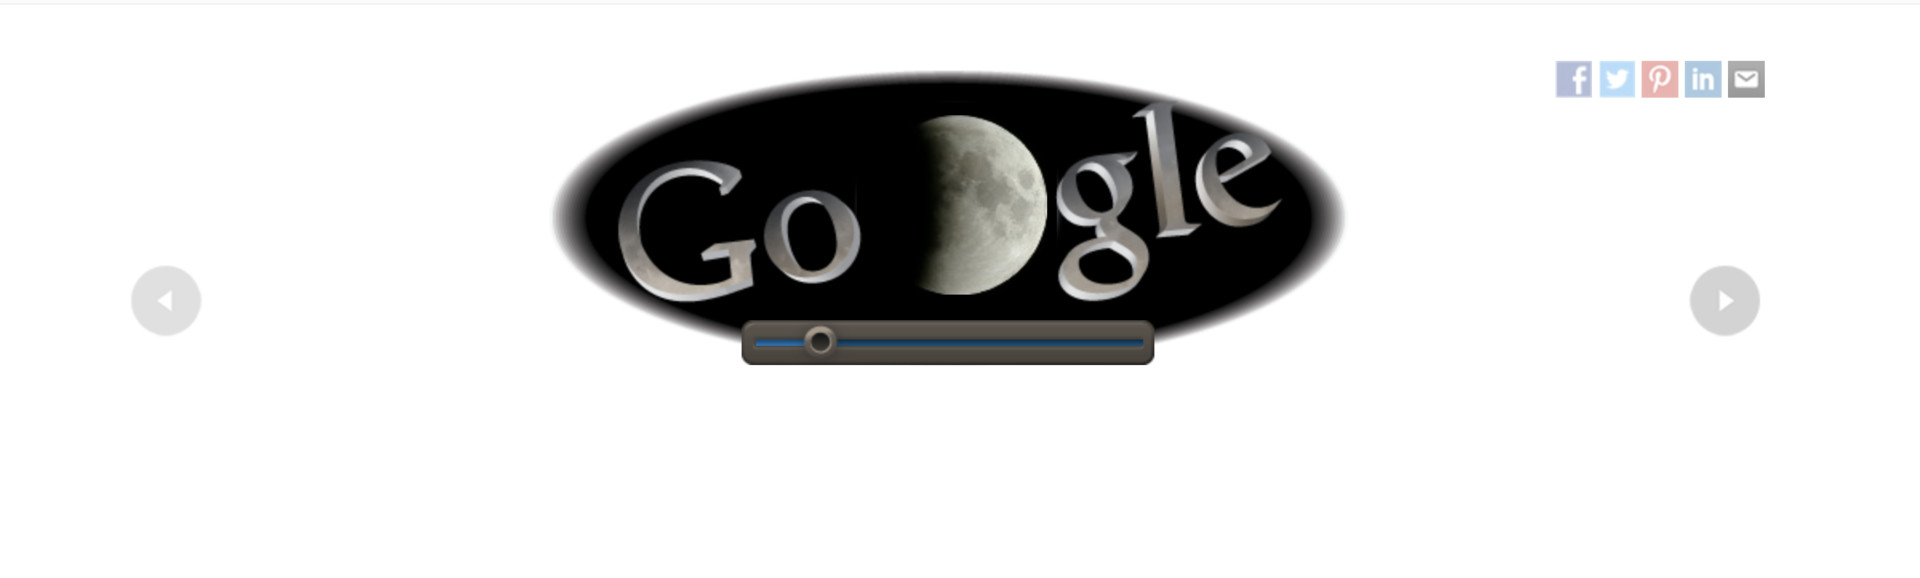 google doodle total lunar eclipse